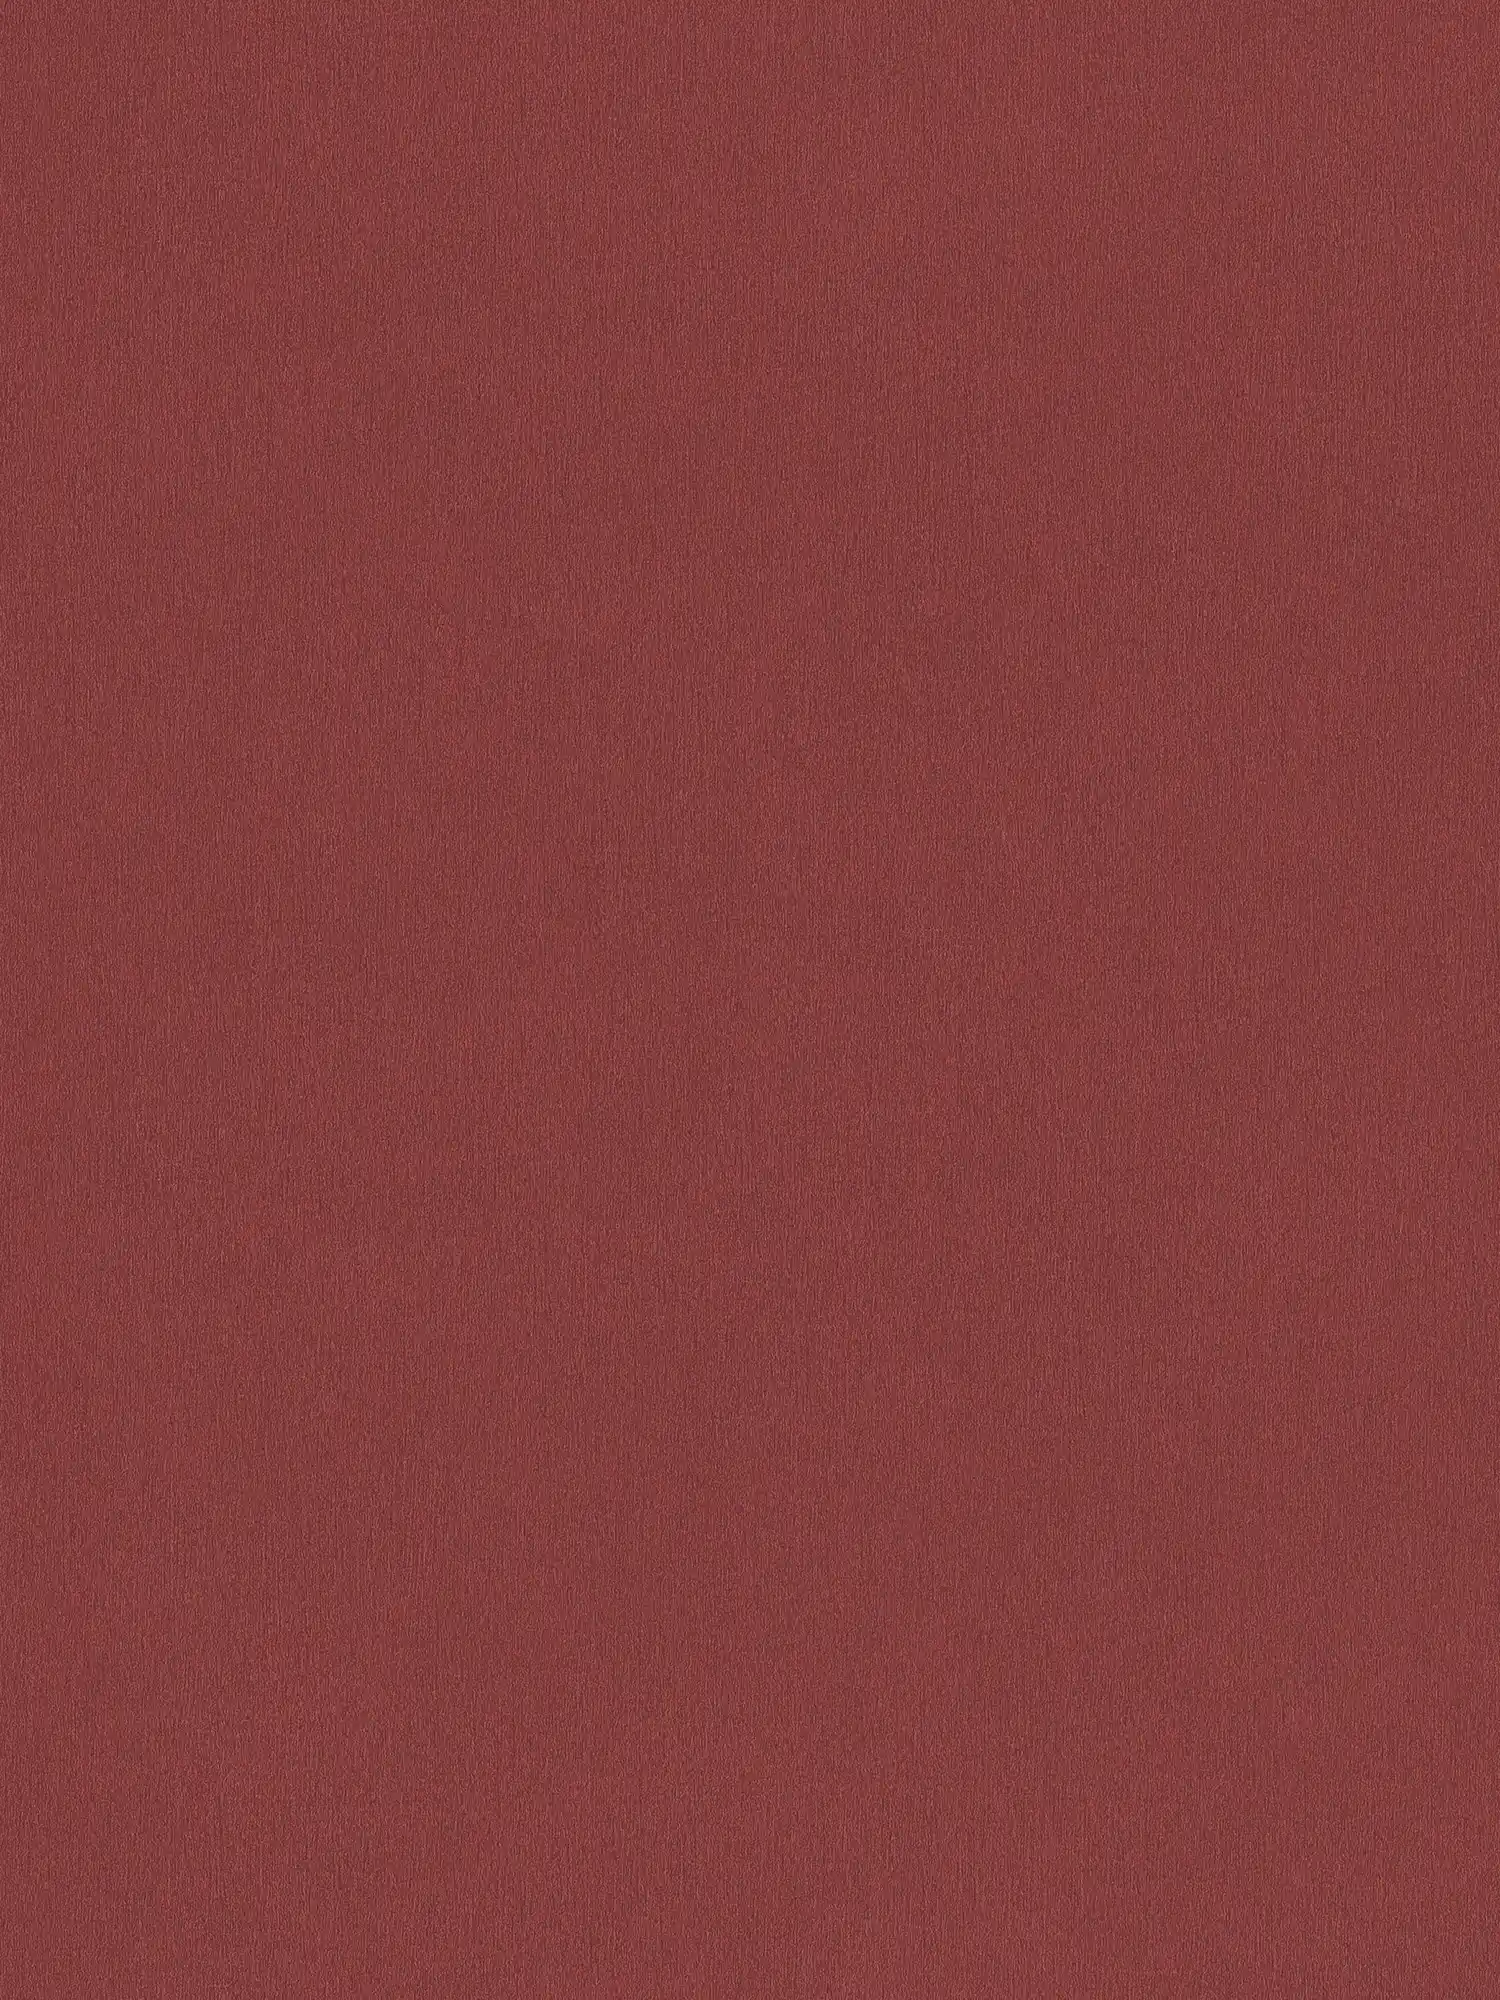 Carta da parati rosso bordeaux con struttura cromatica - rosso scuro
